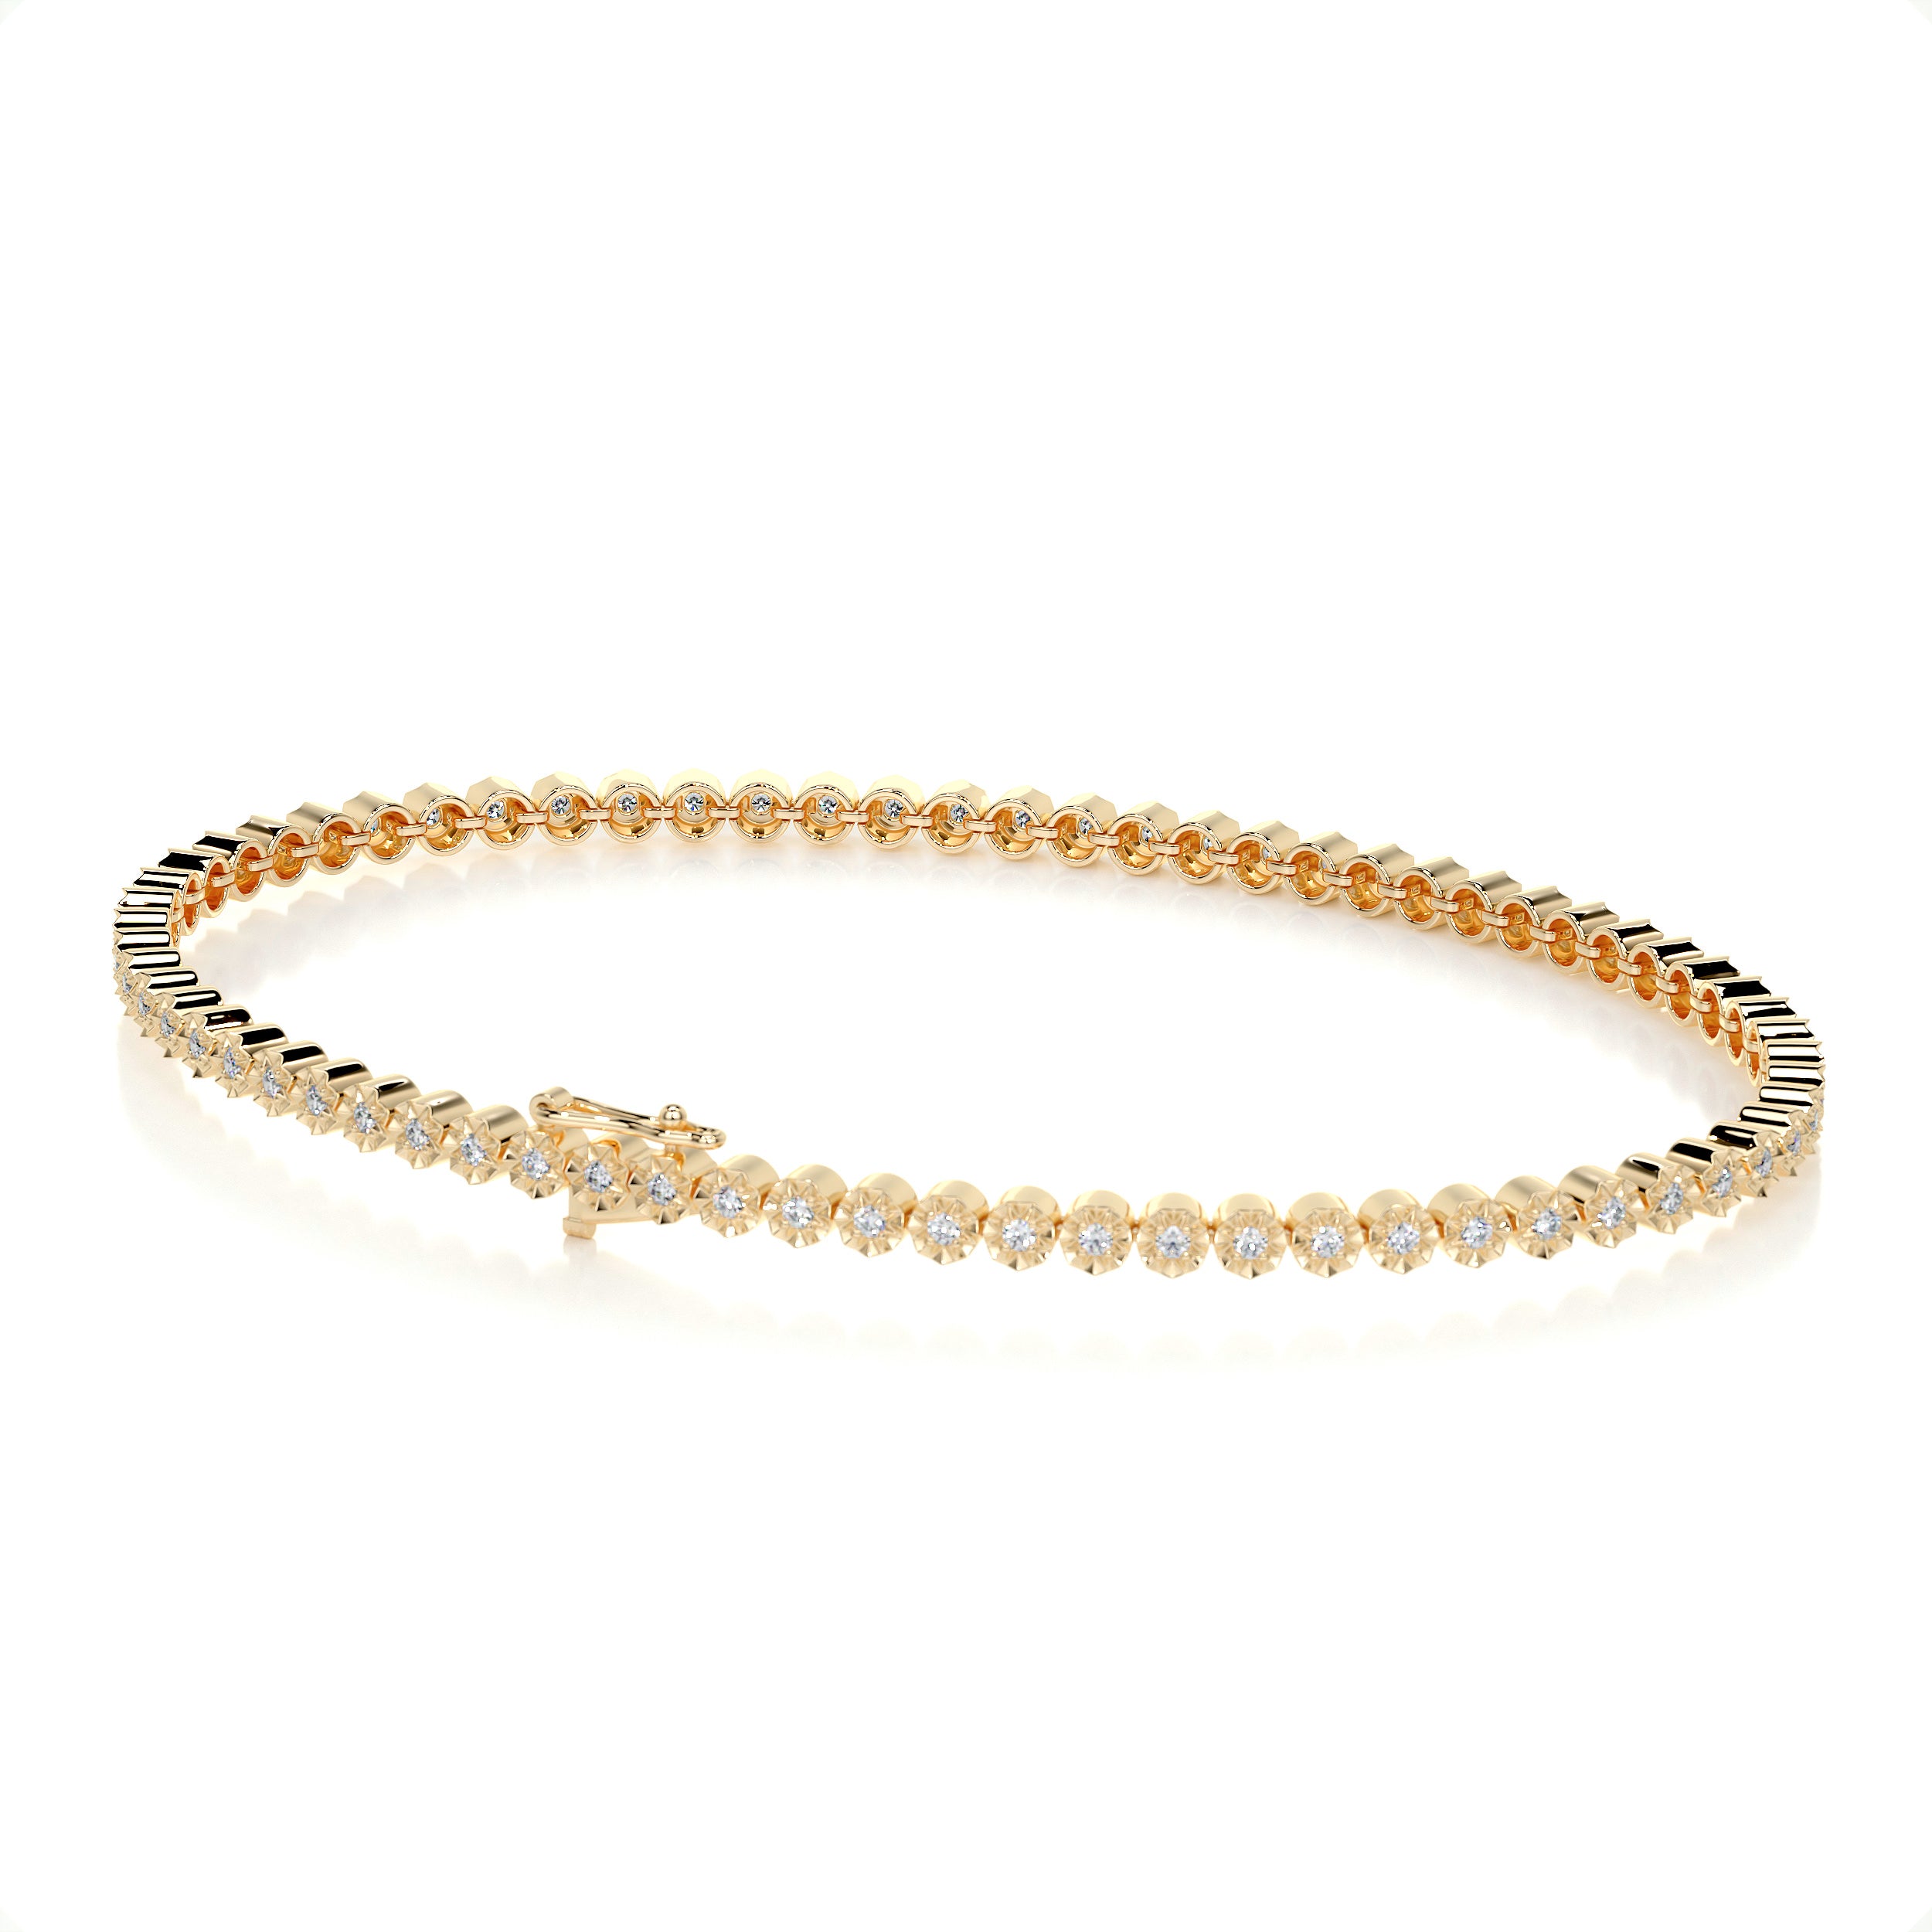 Ingrid Tennis Diamond Bracelet   (0.75 Carat) -18K Yellow Gold